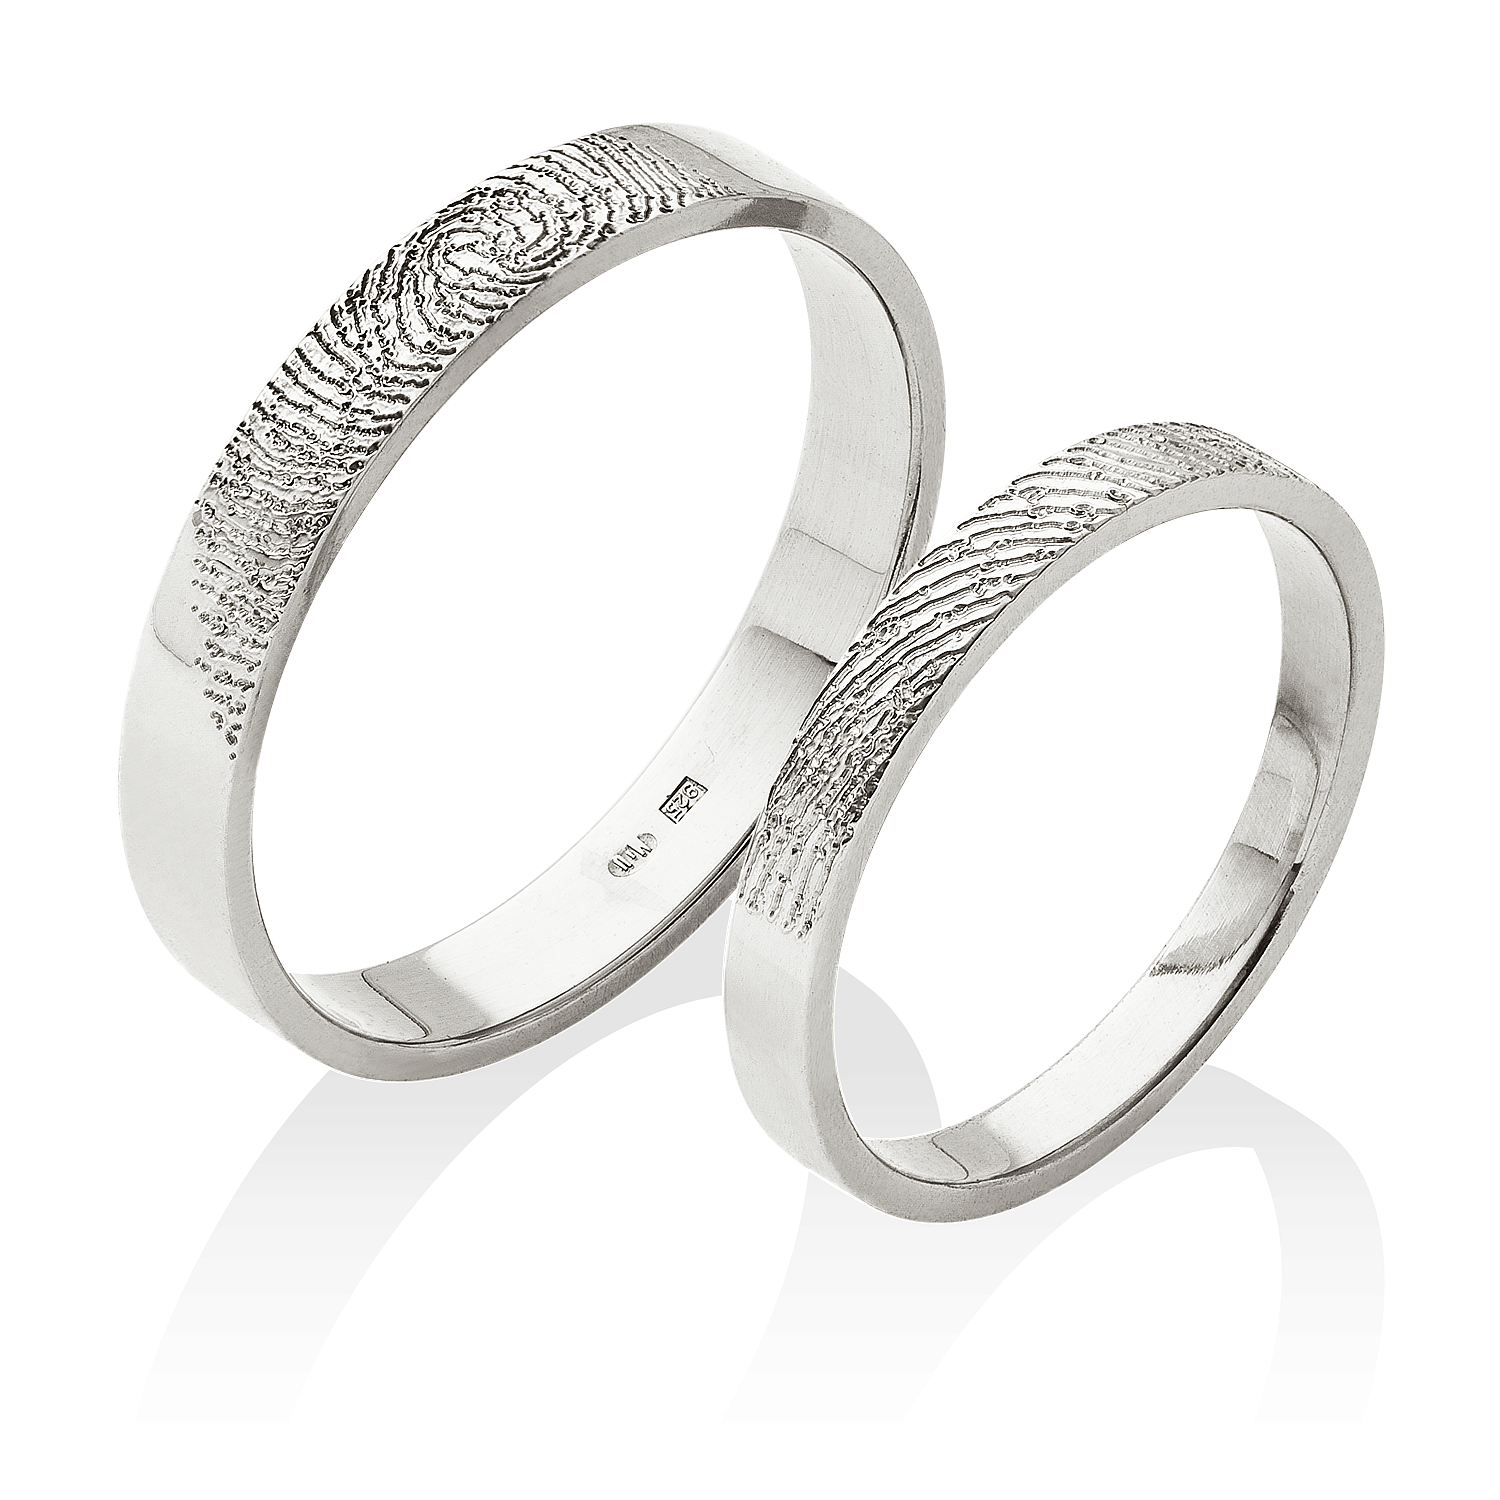 prsteny s jedinečnými otisky vašich prstů